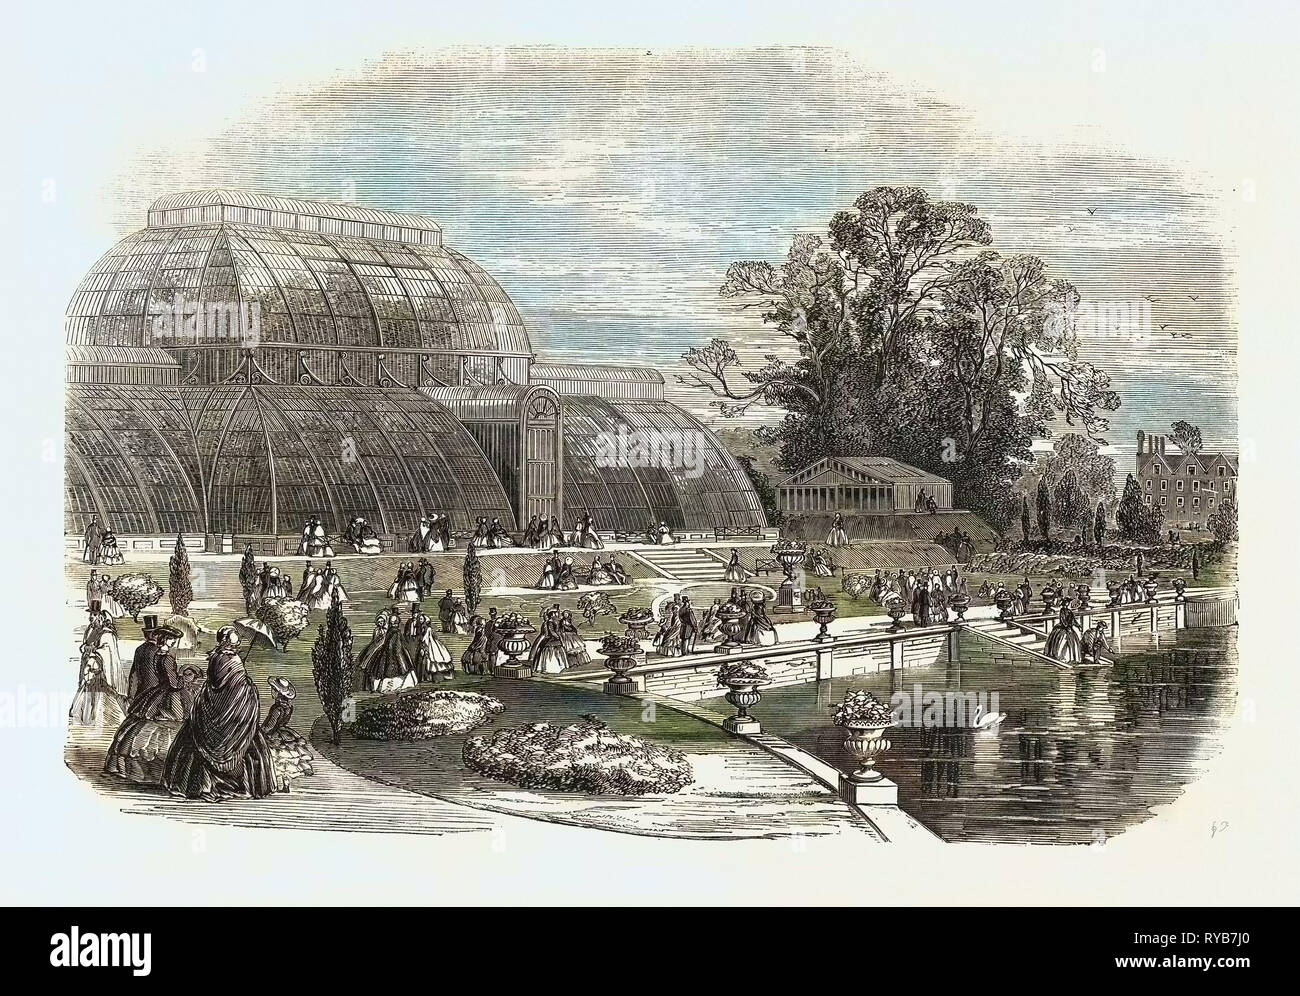 Il giardino delle palme, Kew Gardens, Londra, Regno Unito, 1859 Foto Stock